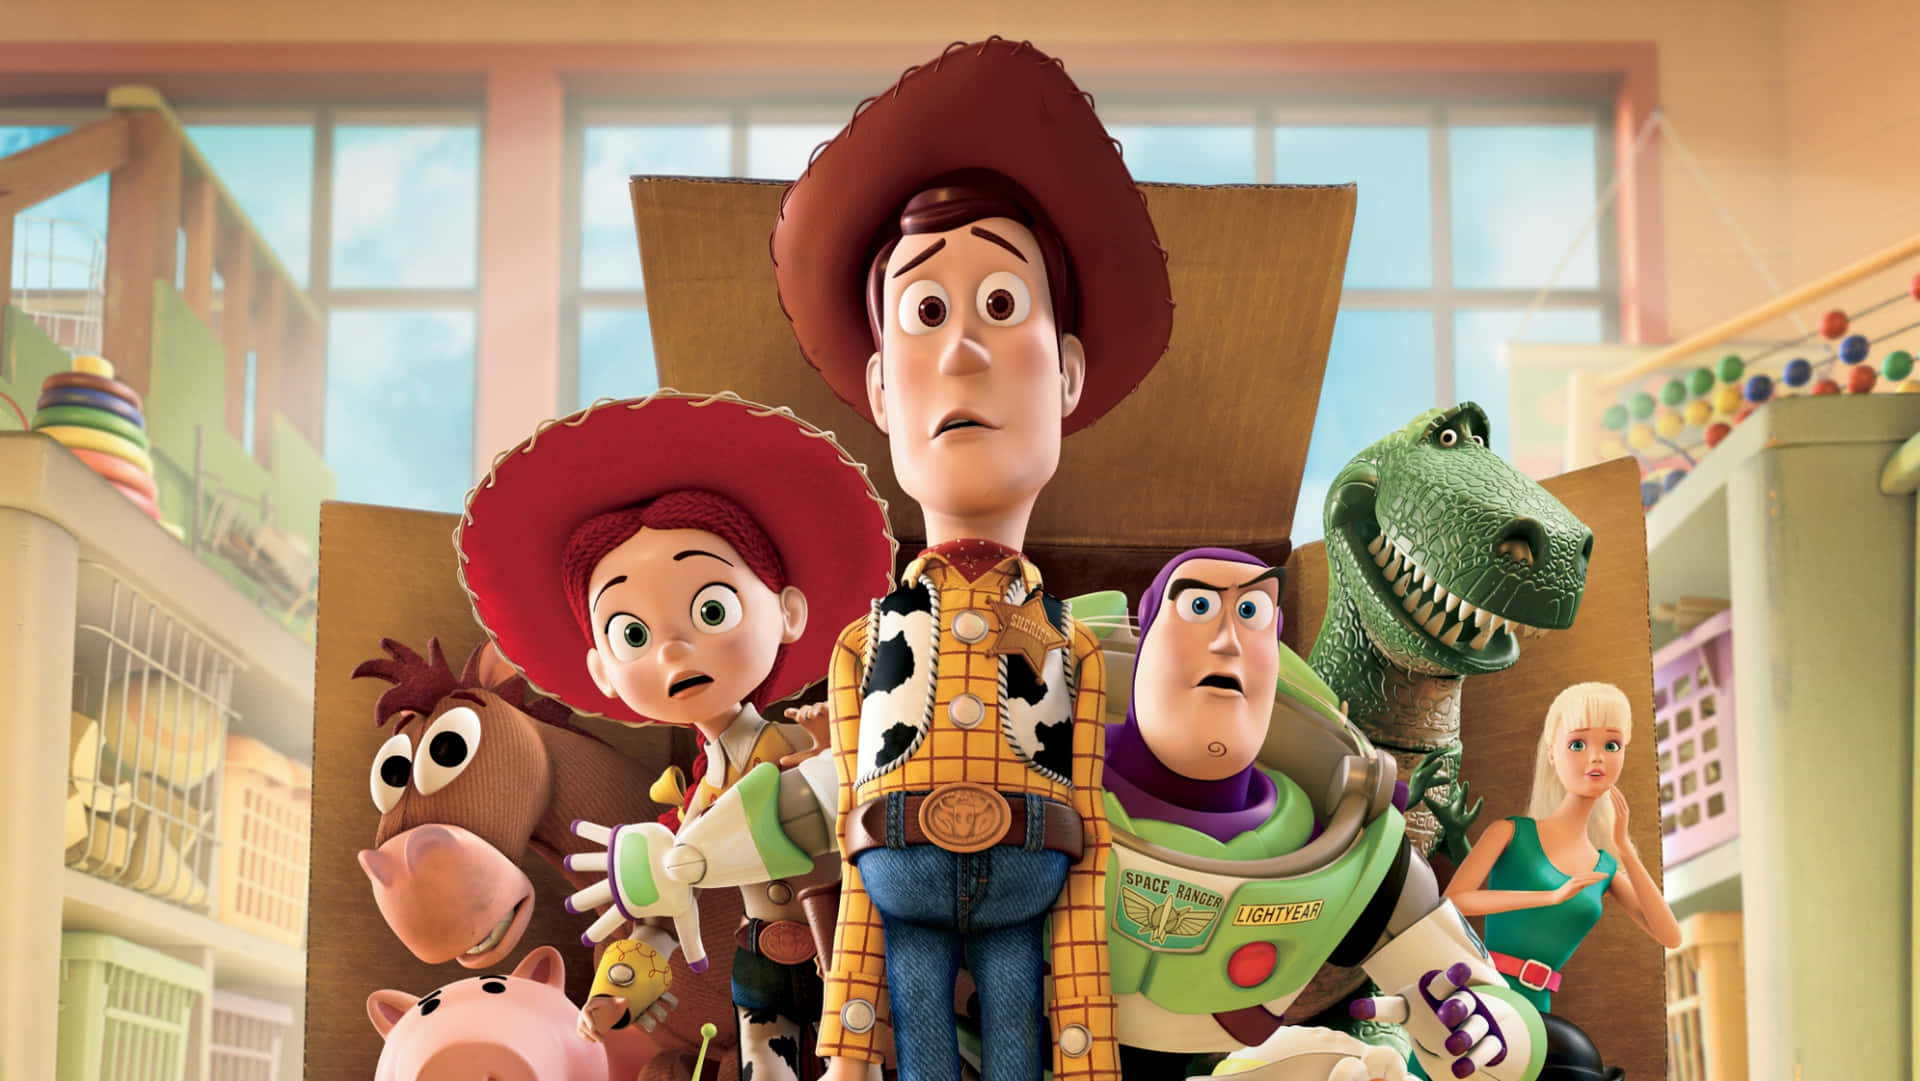 Oxerife Woody E O Forky Embarcam Em Uma Nova Aventura Em Toy Story 4.